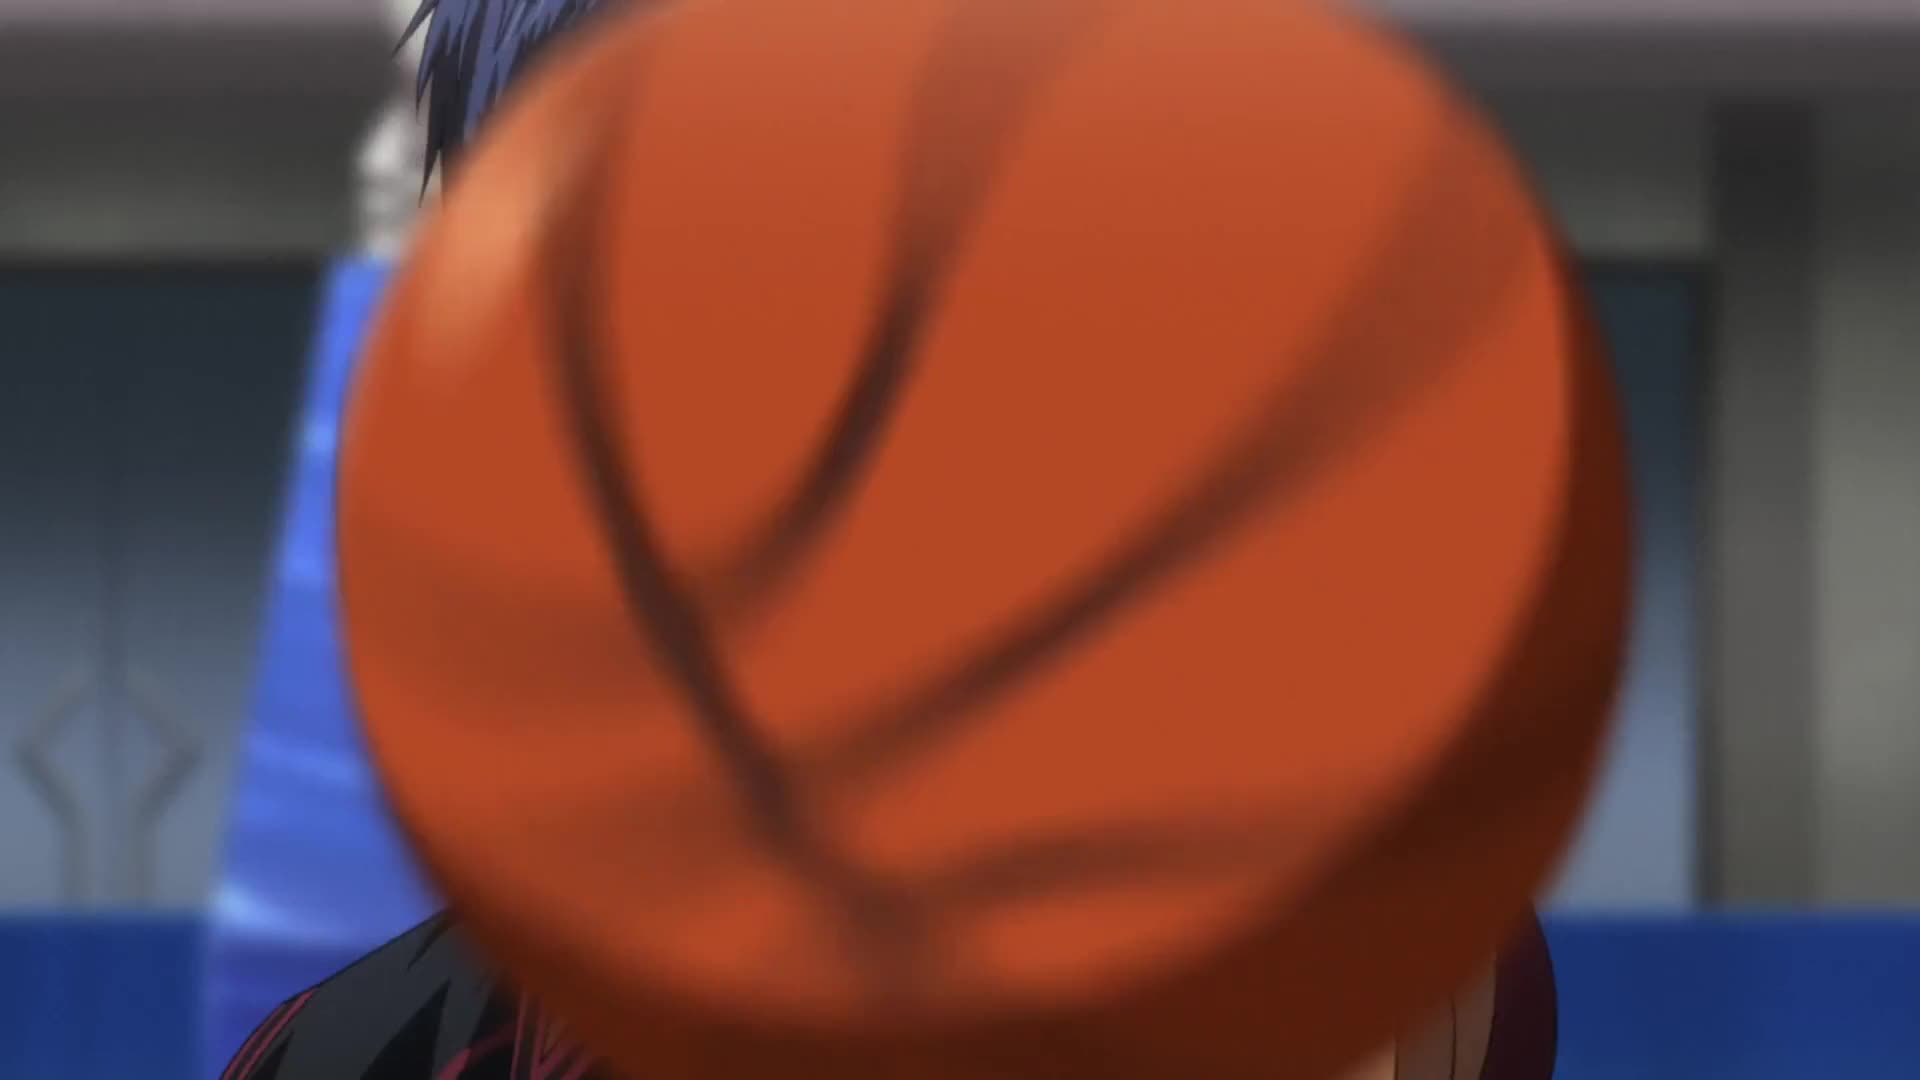 Kuroko no Basket 2nd Season (Dub)